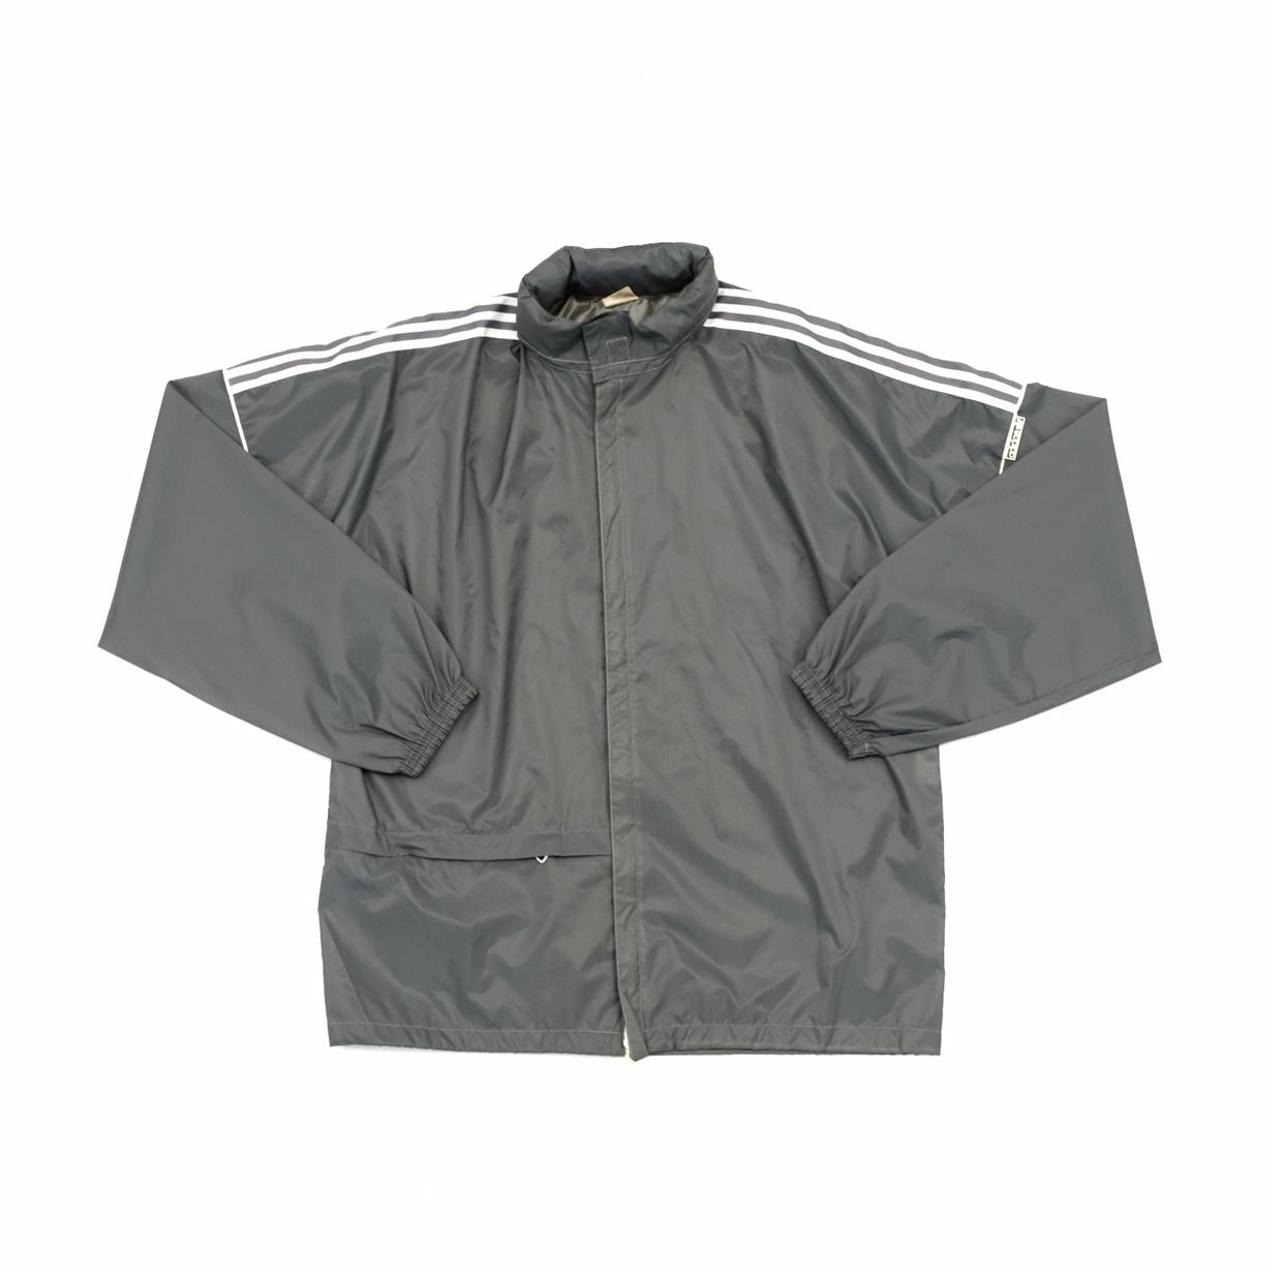 Vintage Adidas jacket. Original 90s Adidas raincoat.... - Depop